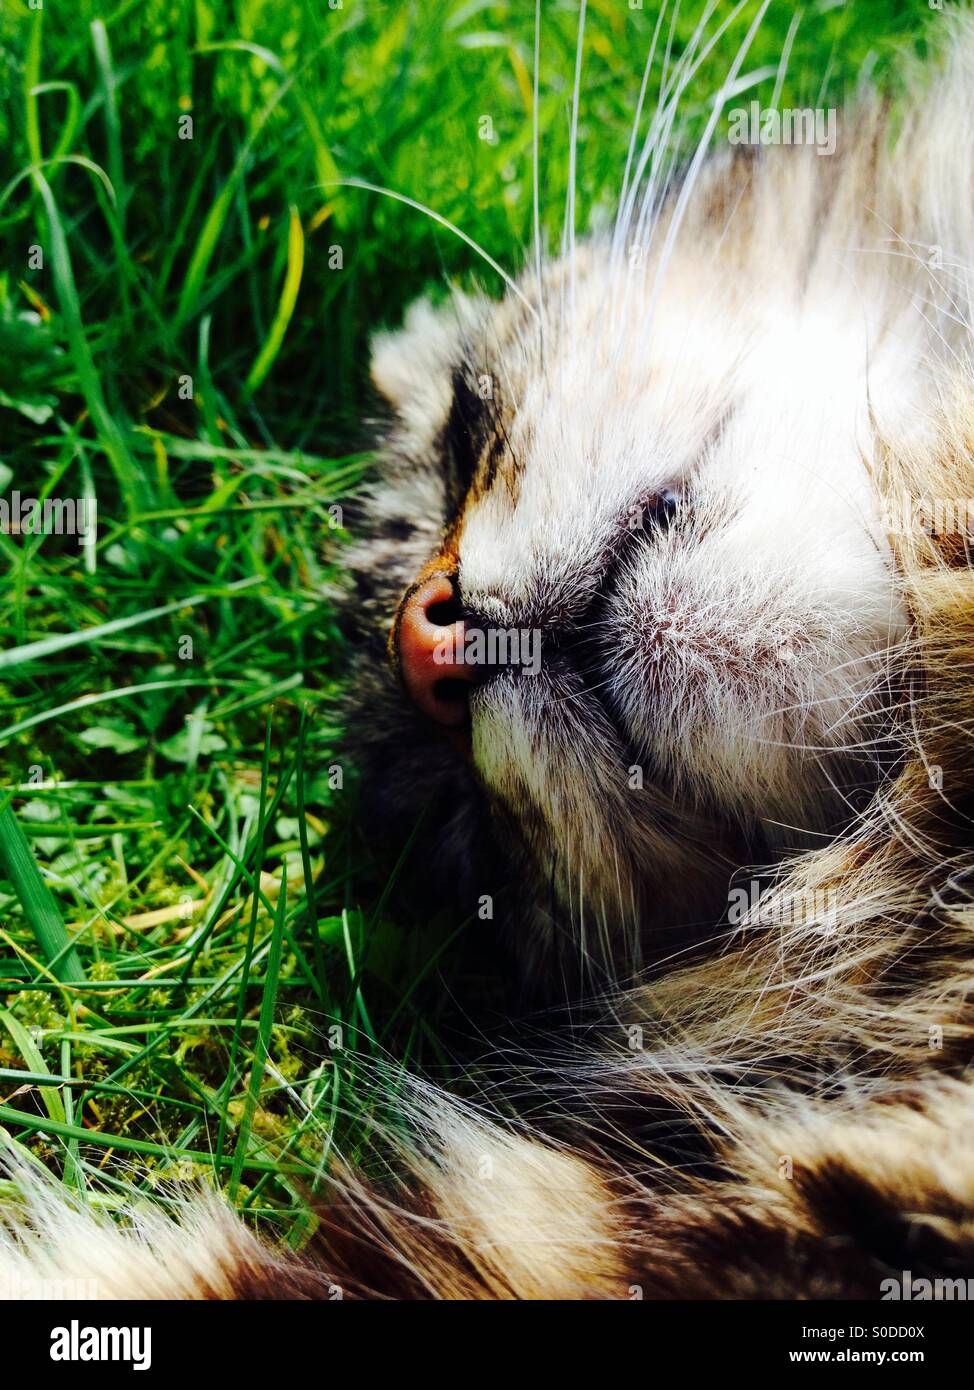 Chat tigré dormir sur la pelouse Banque D'Images